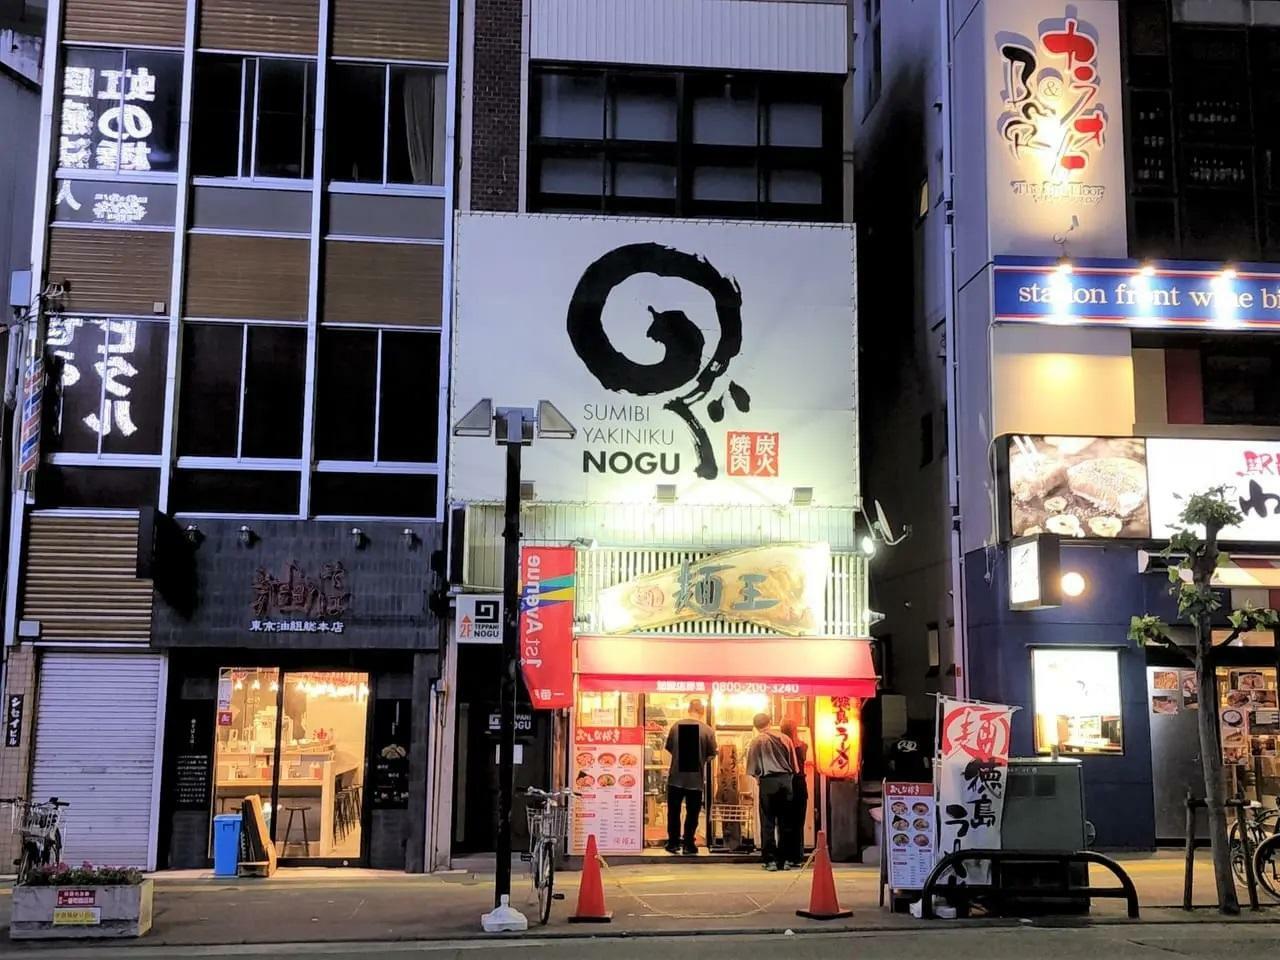 「麺王」の本店「麺王 徳島駅前本店」店舗外観。※以前に撮影したもの。